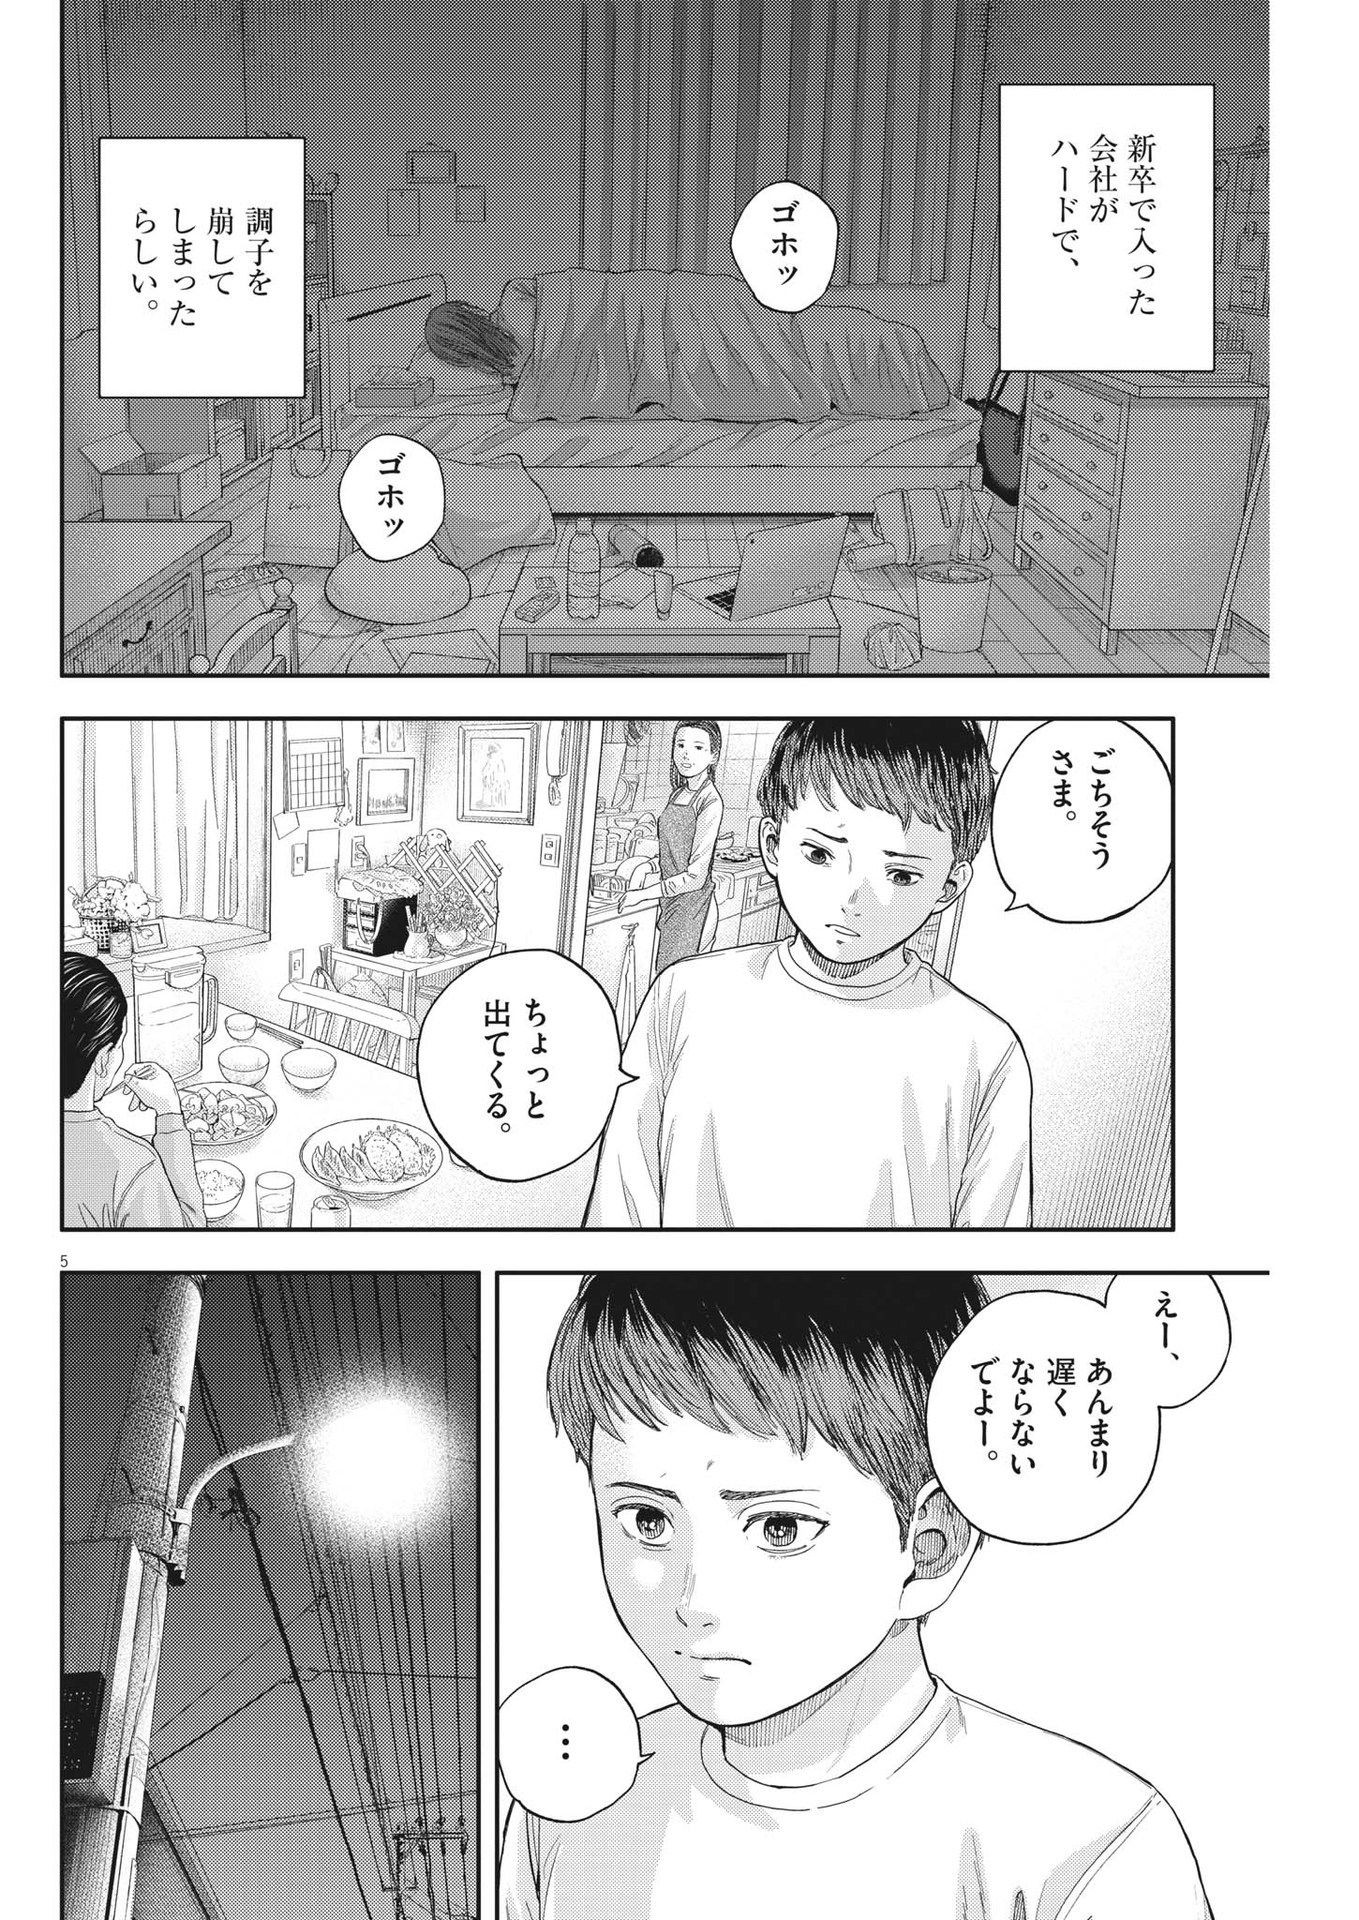 Yumenashi-sensei no Shinroshidou - Chapter 19 - Page 5